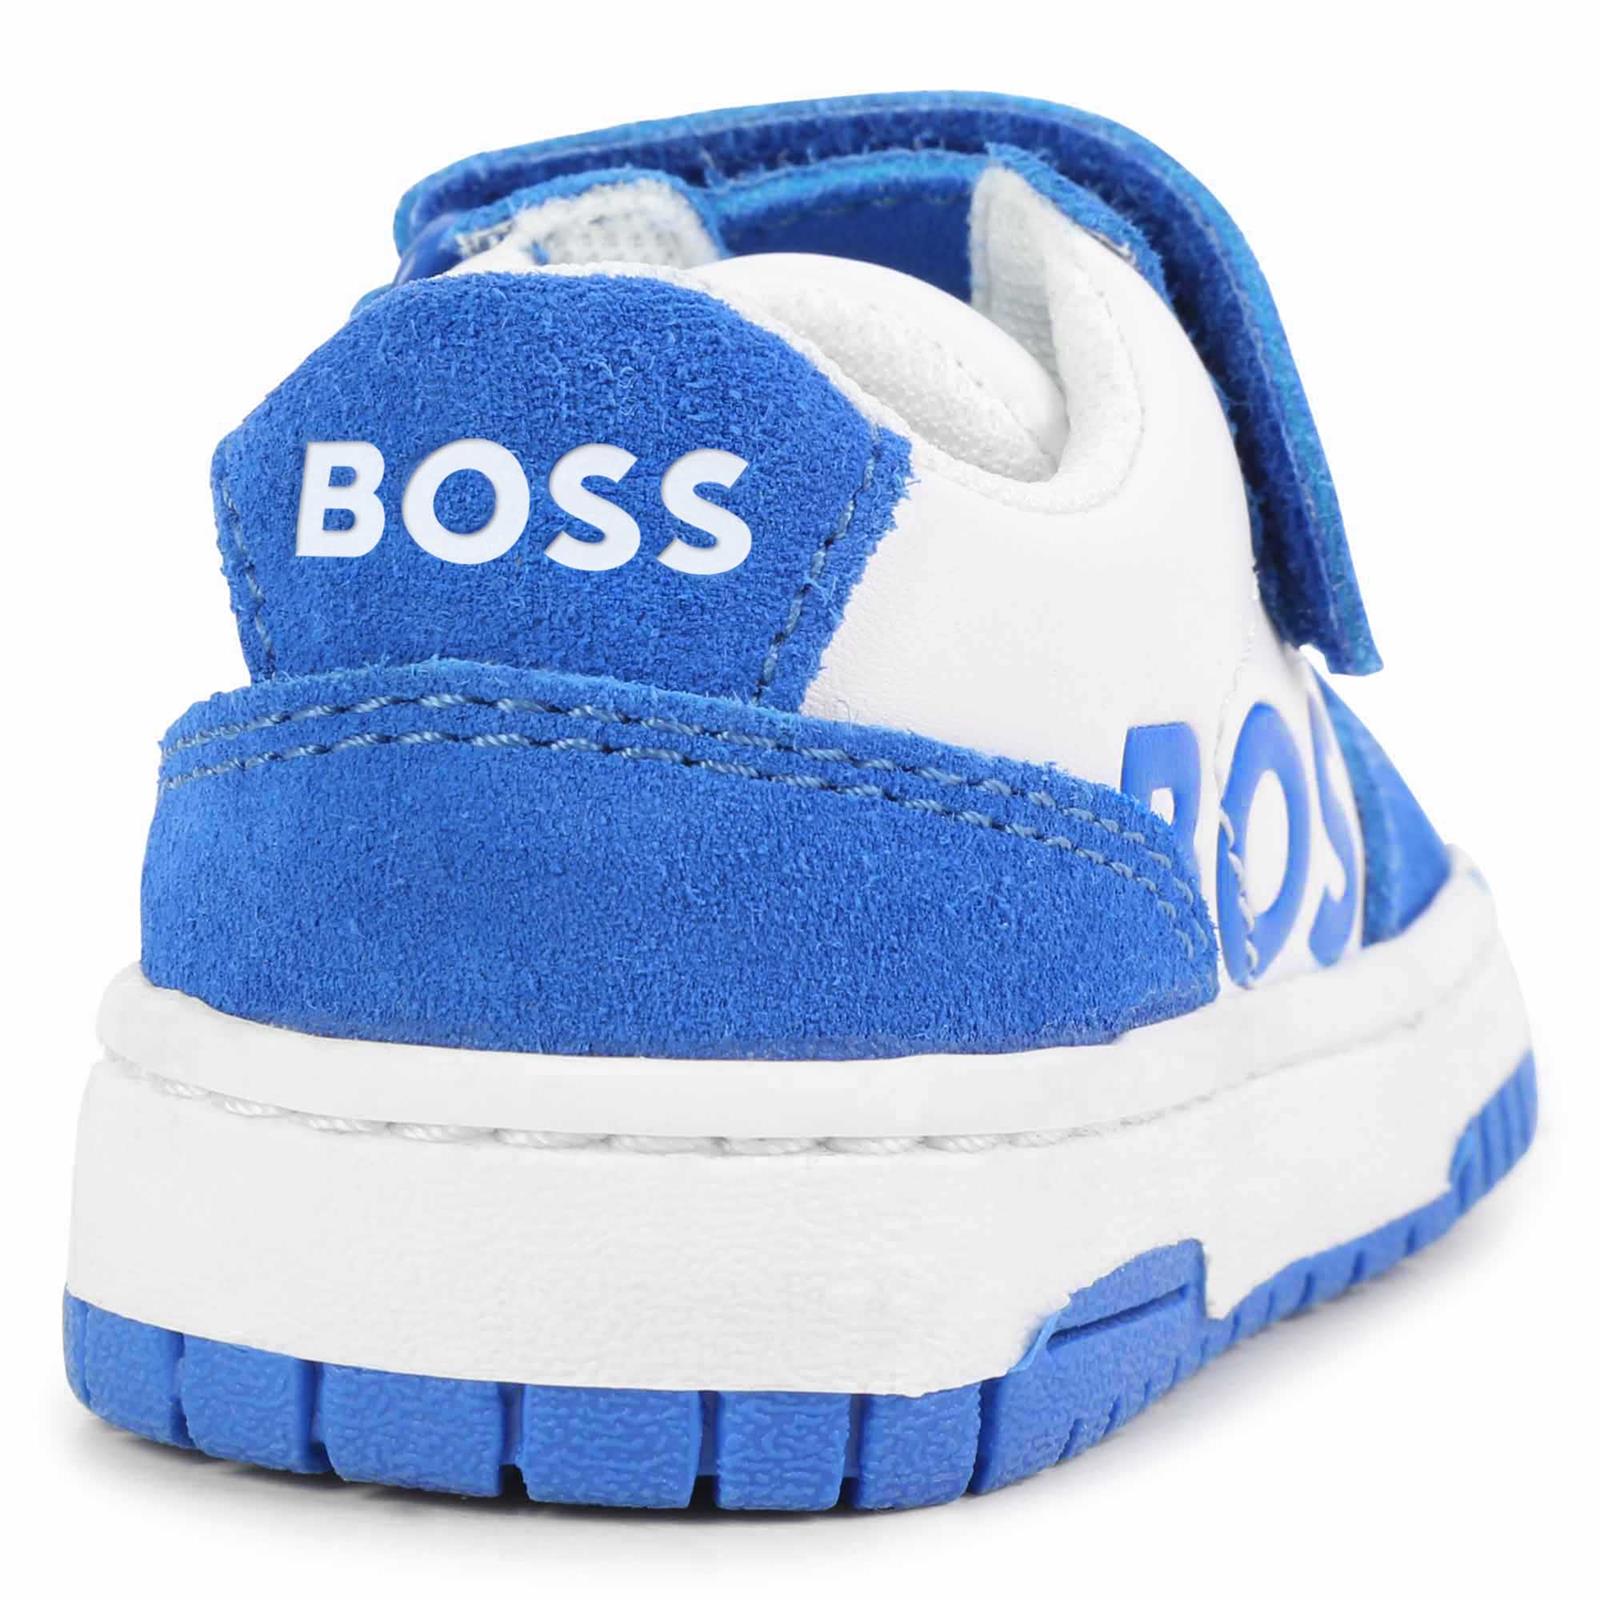 Hugo Boss Baby Boys White & Blue Sneakers